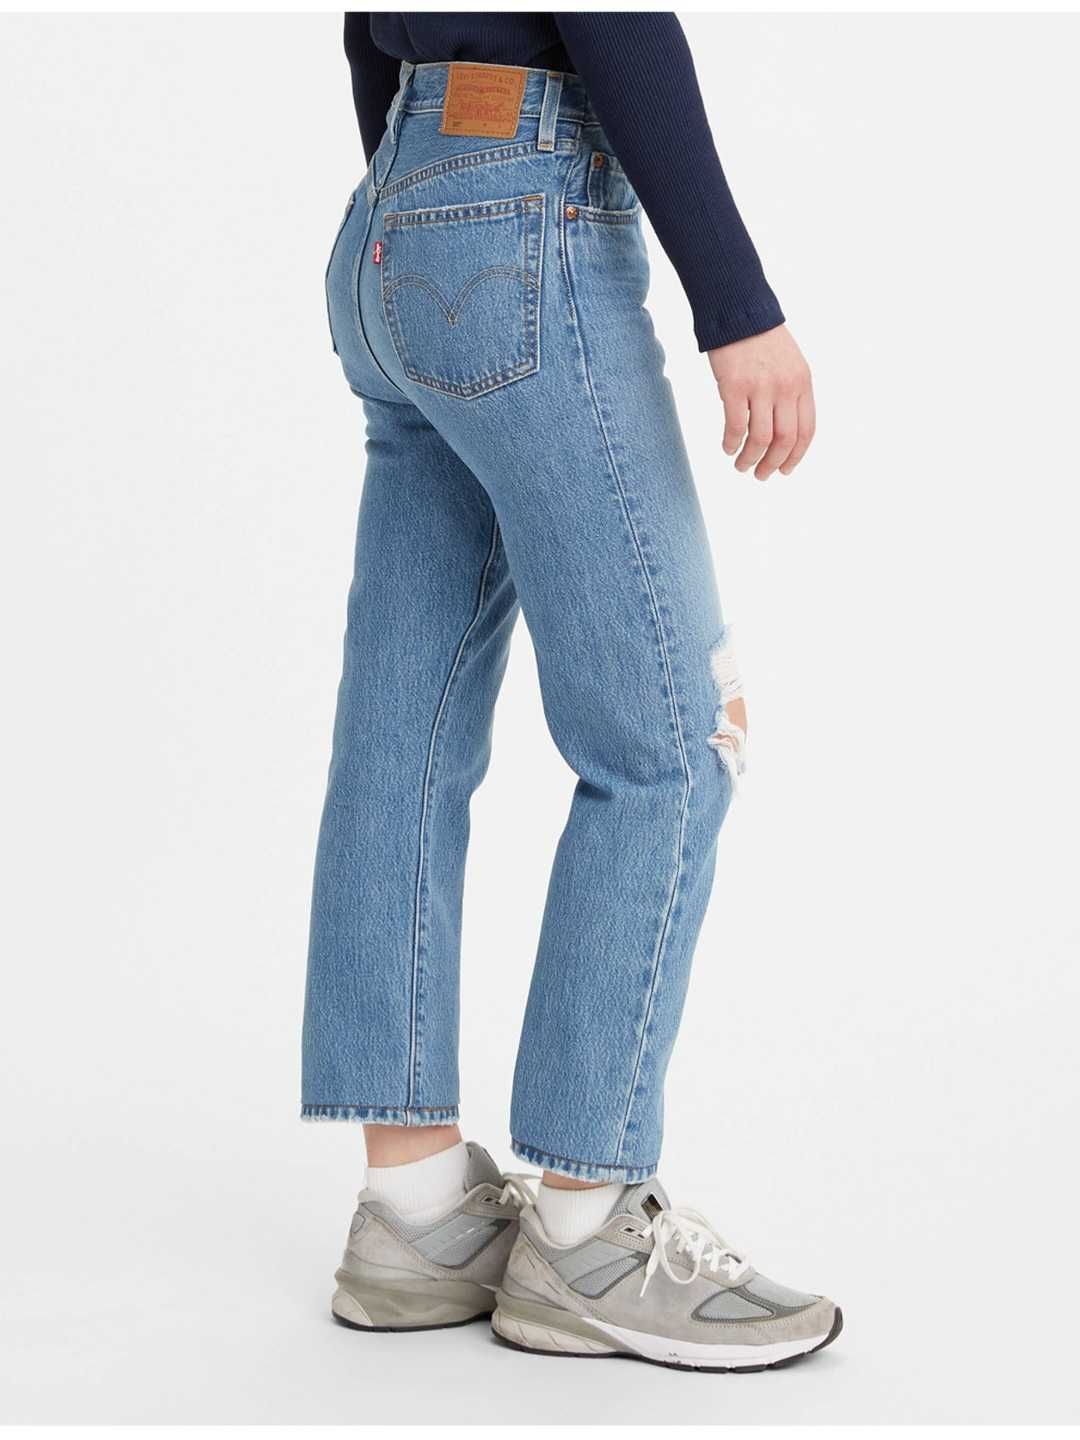 32х28 жіночі оригінальні джинси LEVIS 501 CROPPED /левис зара хилфигер